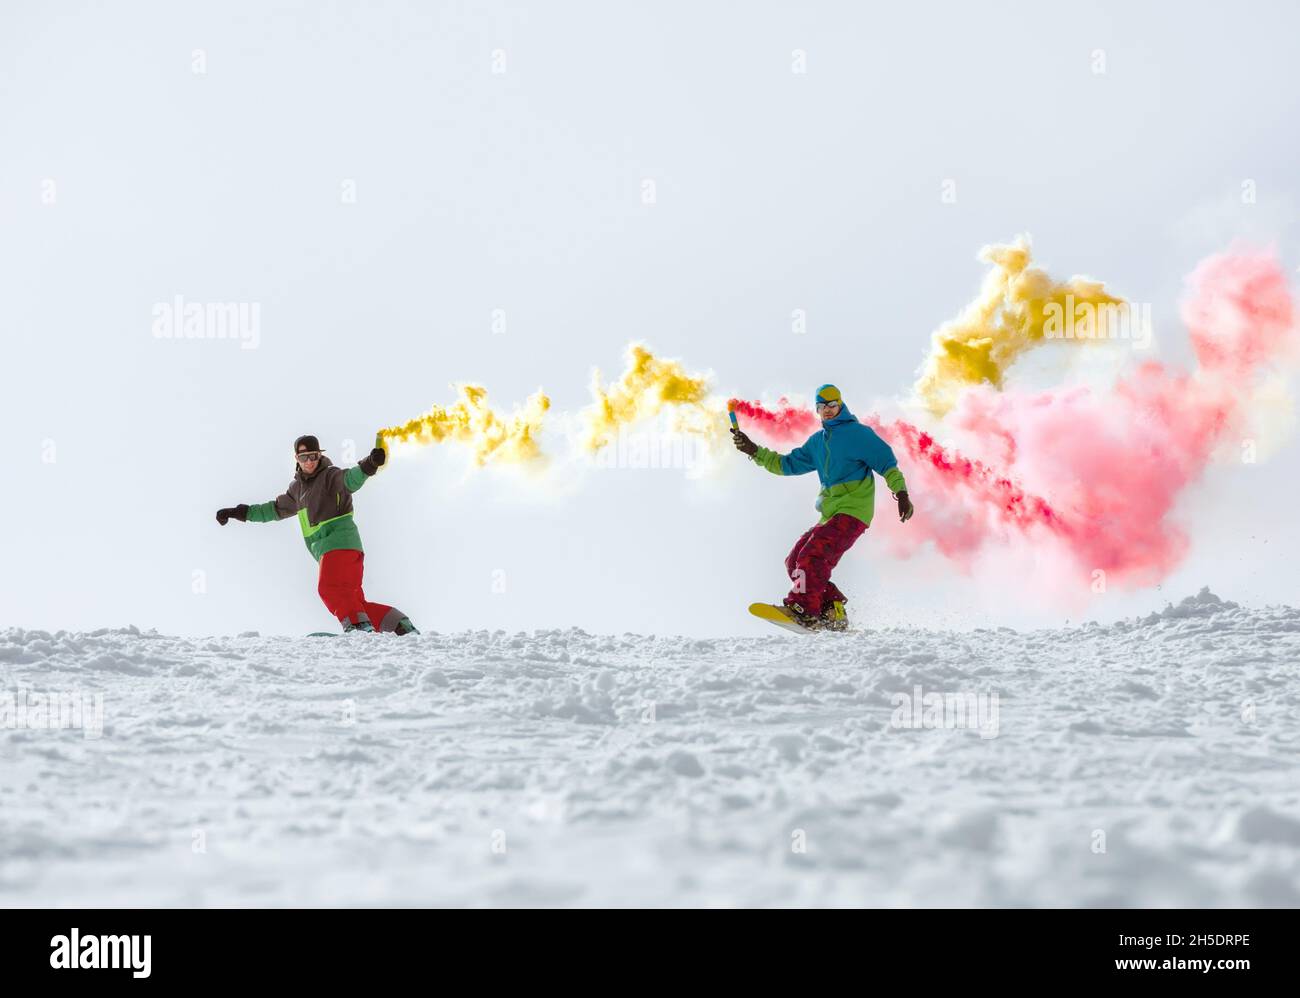 Deux amis snowboarders s'amusent avec la torche à fumée sur la piste de ski.Sports d'hiver Banque D'Images